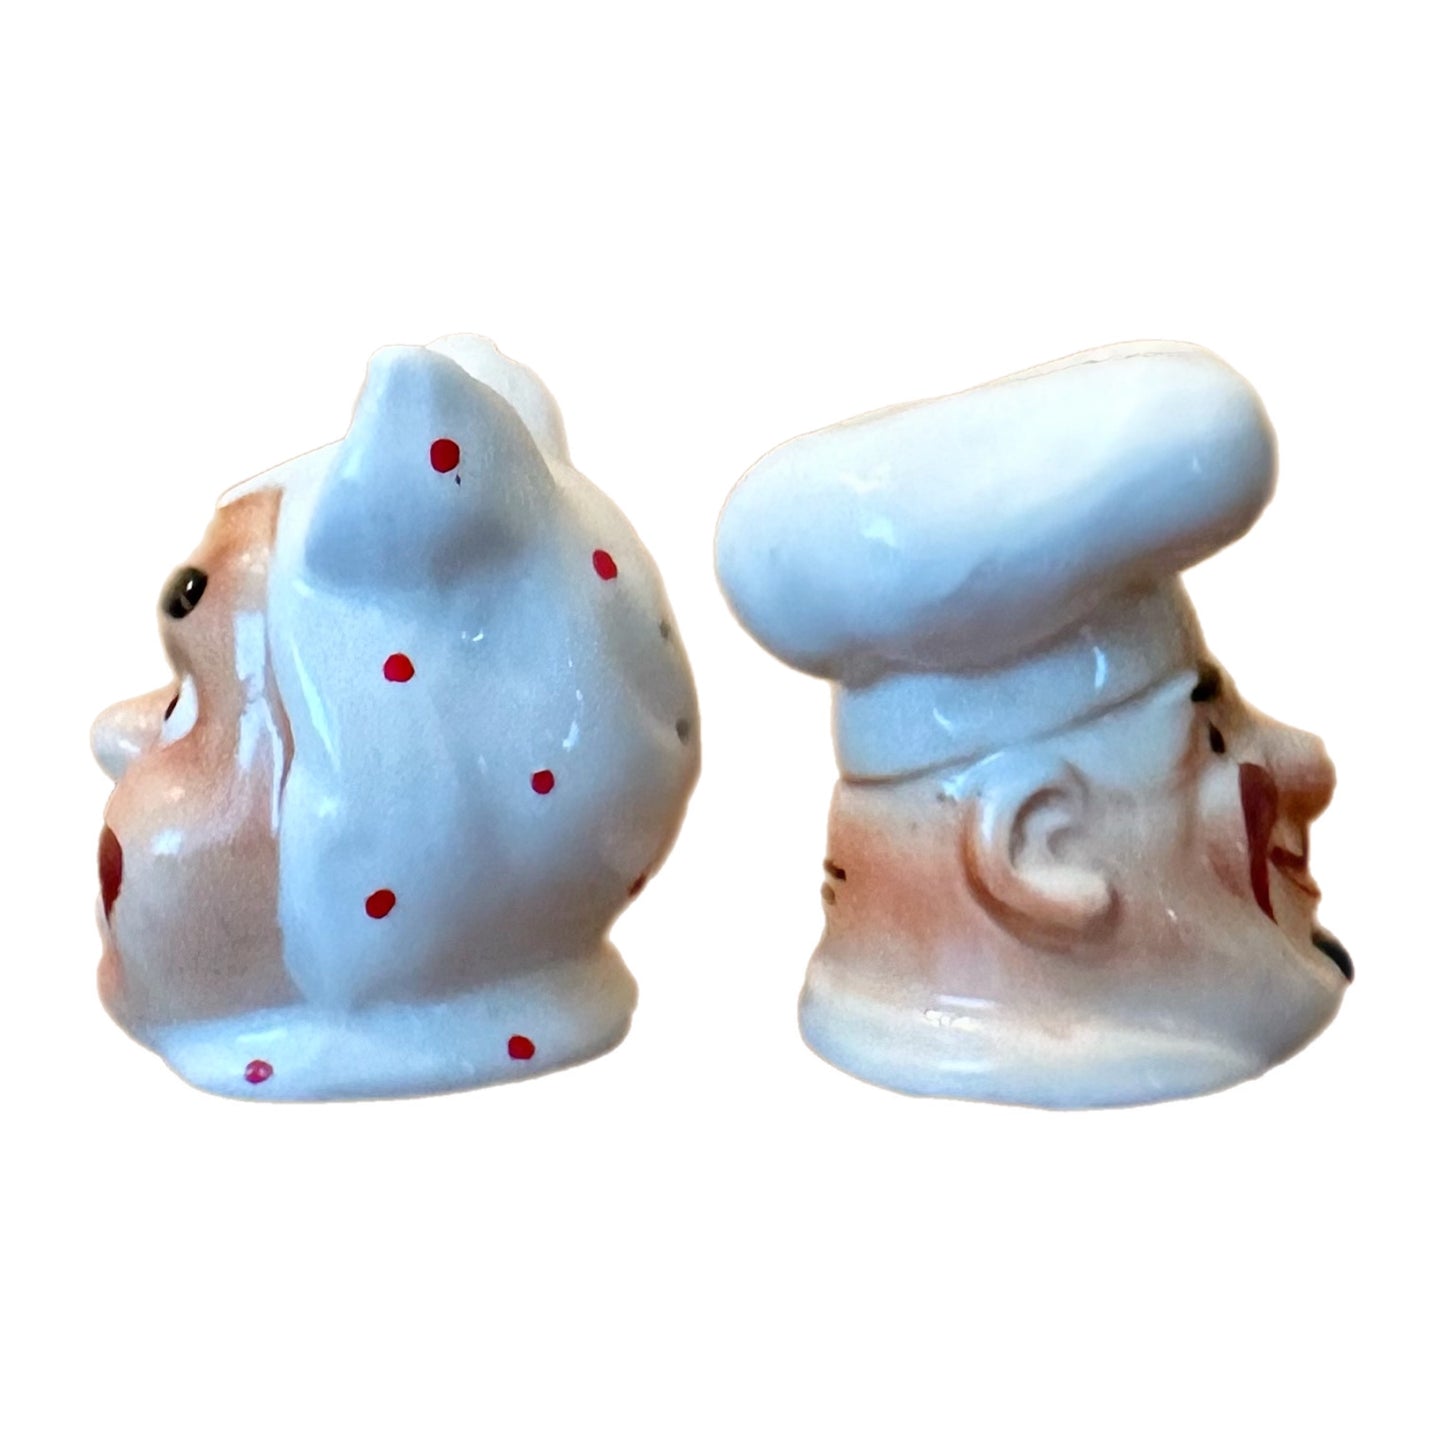 VINTAGE CHEF COOK BAKER SALT & PEPPER SHAKER SET, Large Heads, Vintage Japan Ceramics